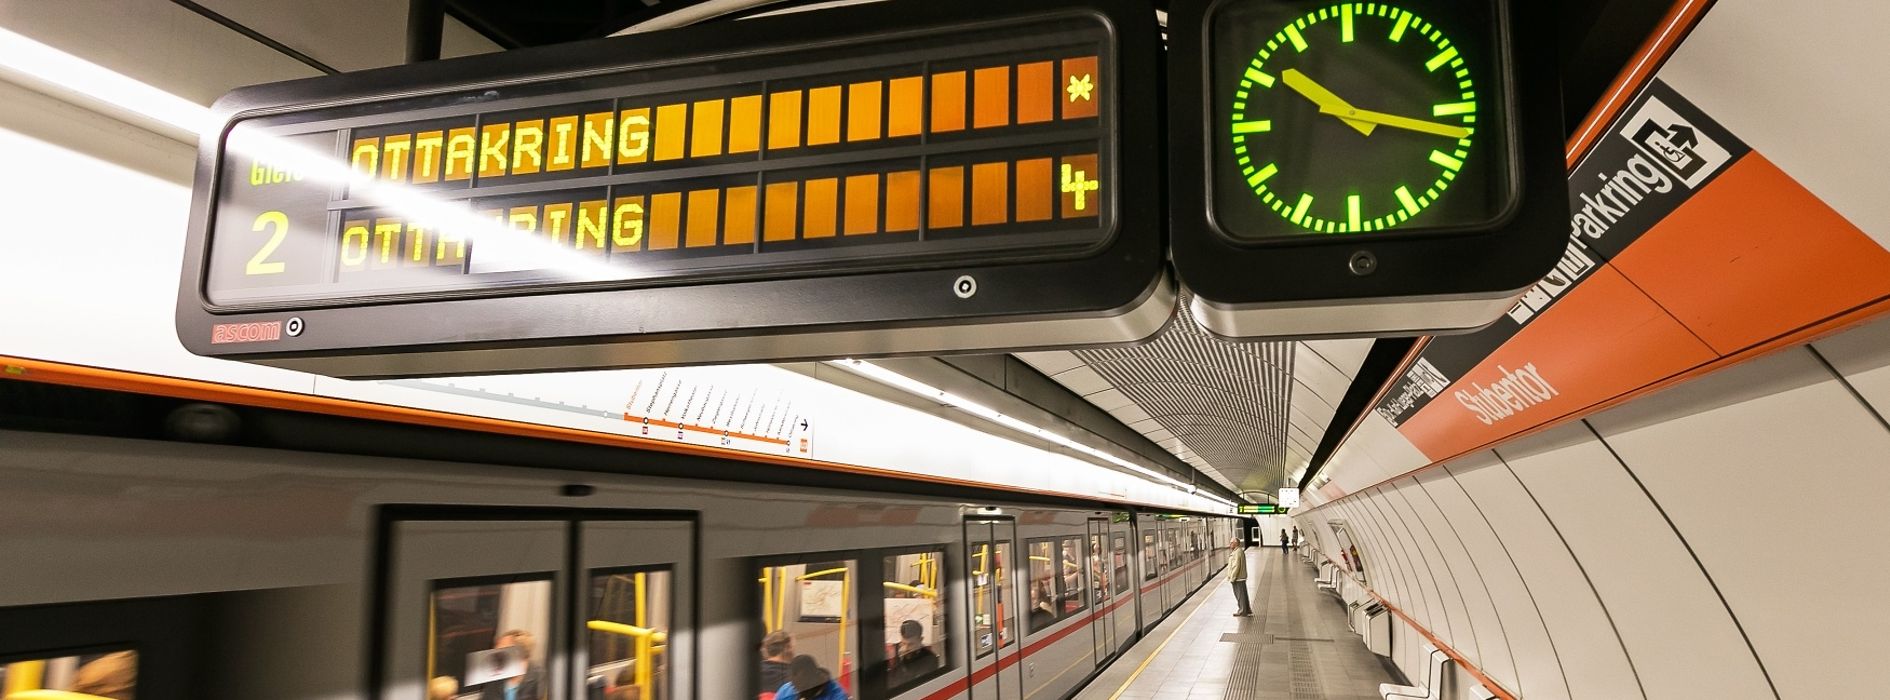 Информационное табло с часами в венском метро